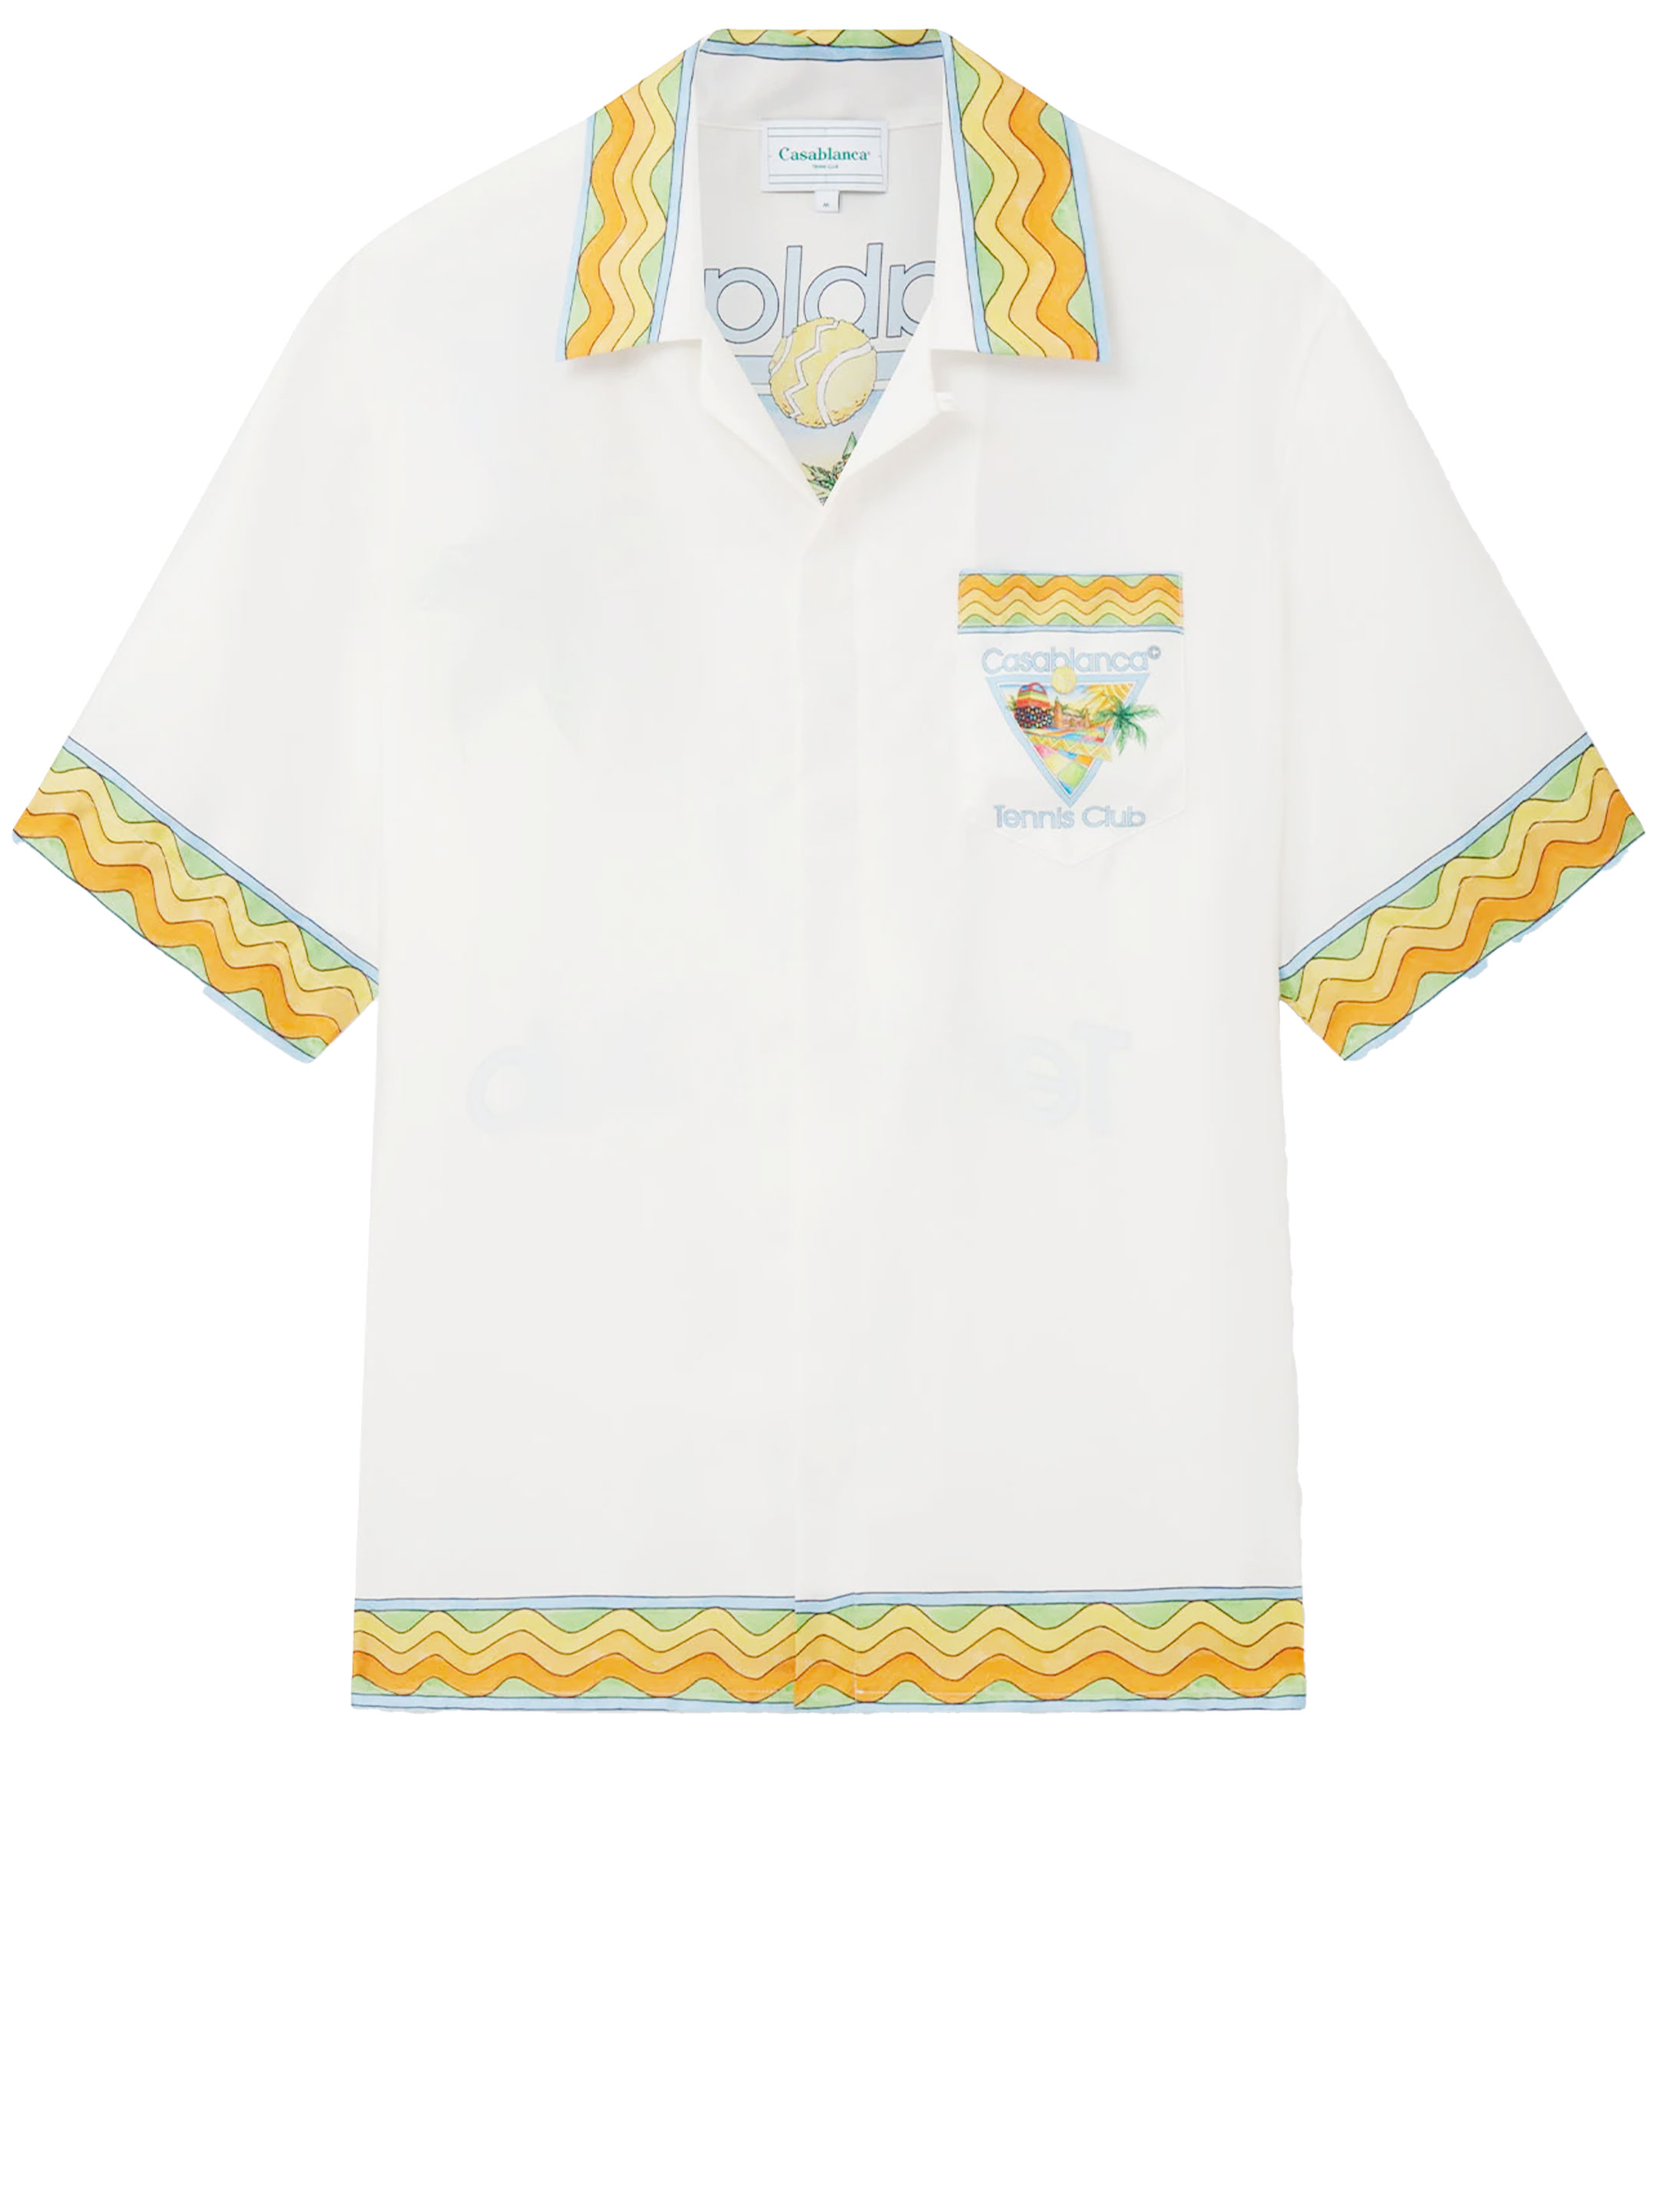 Рубашка Casablanca Afro Cubism Tennis Club, белый